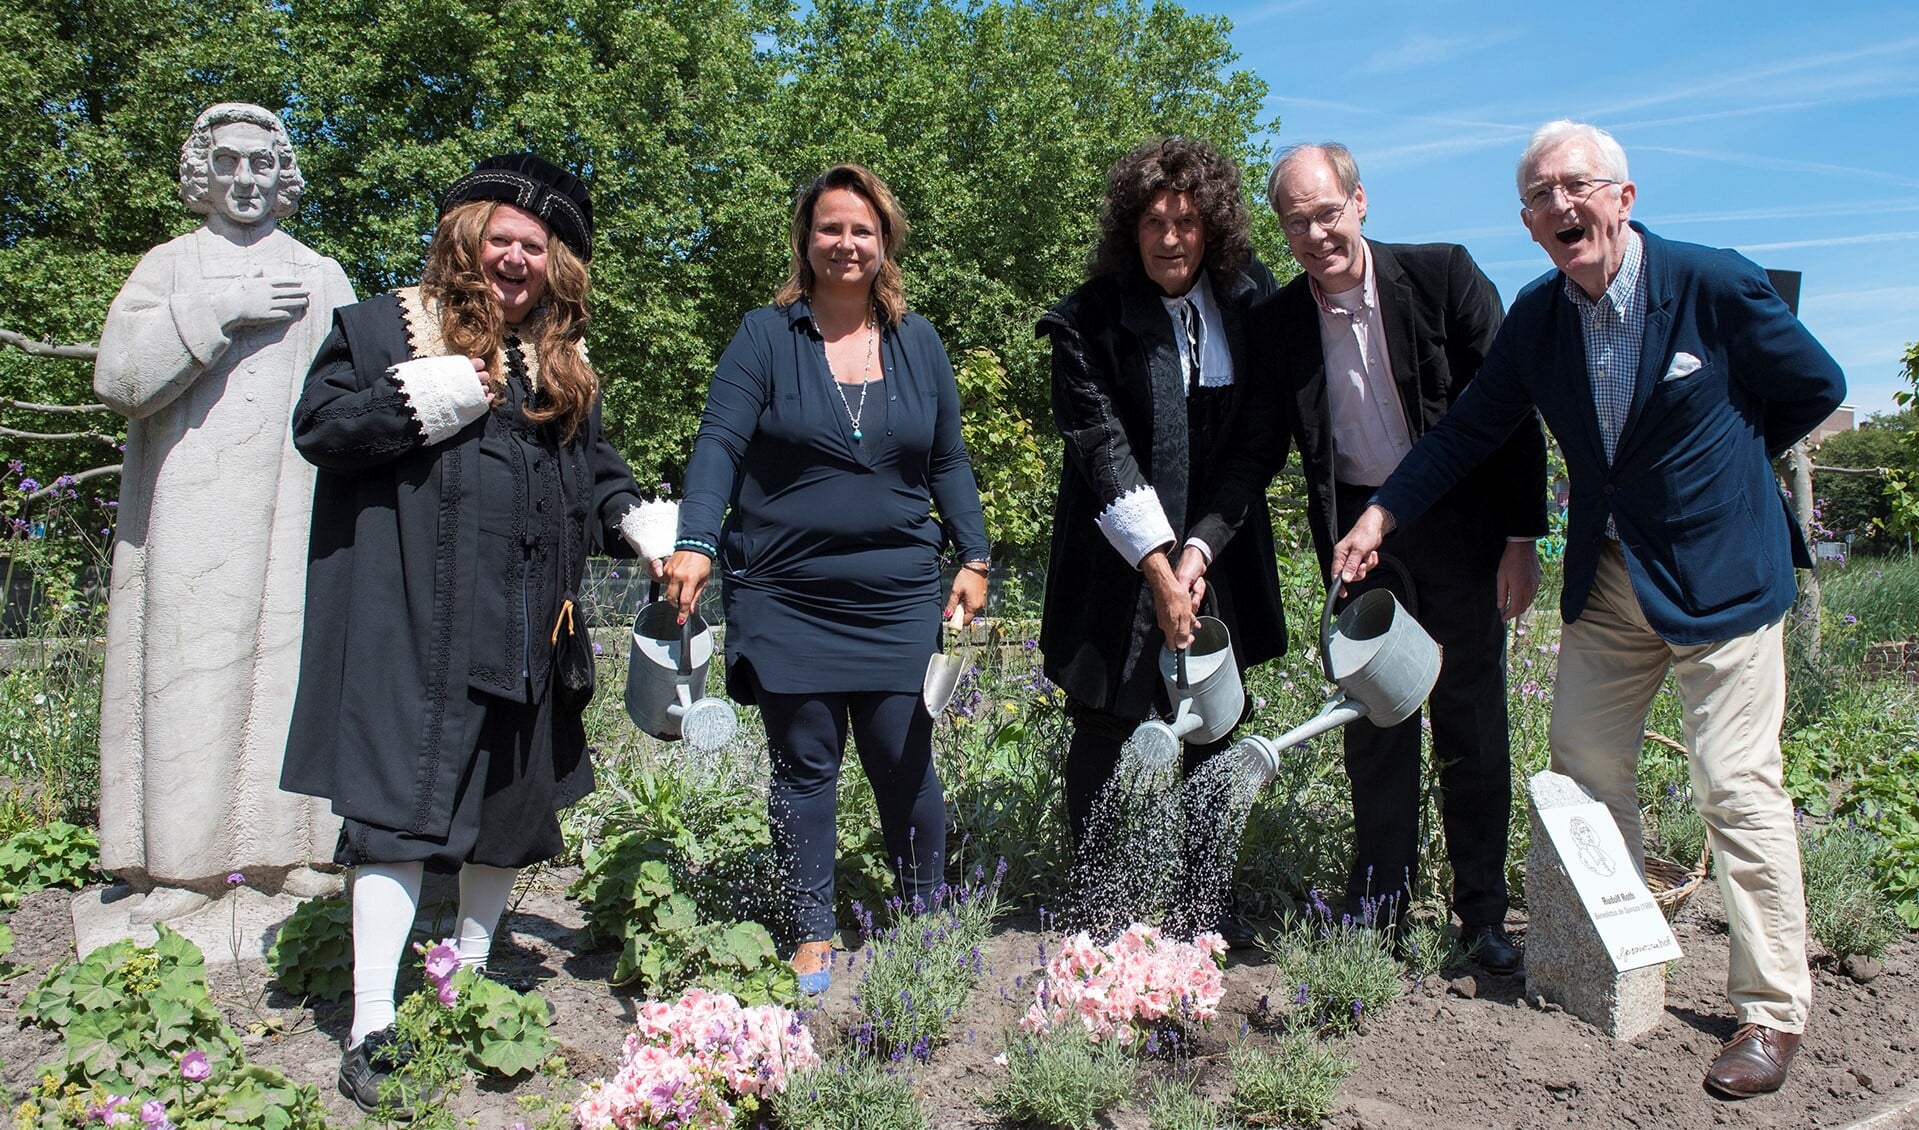 Met het begieten van de beplanting werd de Spinozatuin geopend door wethouder Stemerdink, hoogheemraad Ries Smits, Huijgens en natuurlijk Spinoza zelf (foto: Michel Groen).